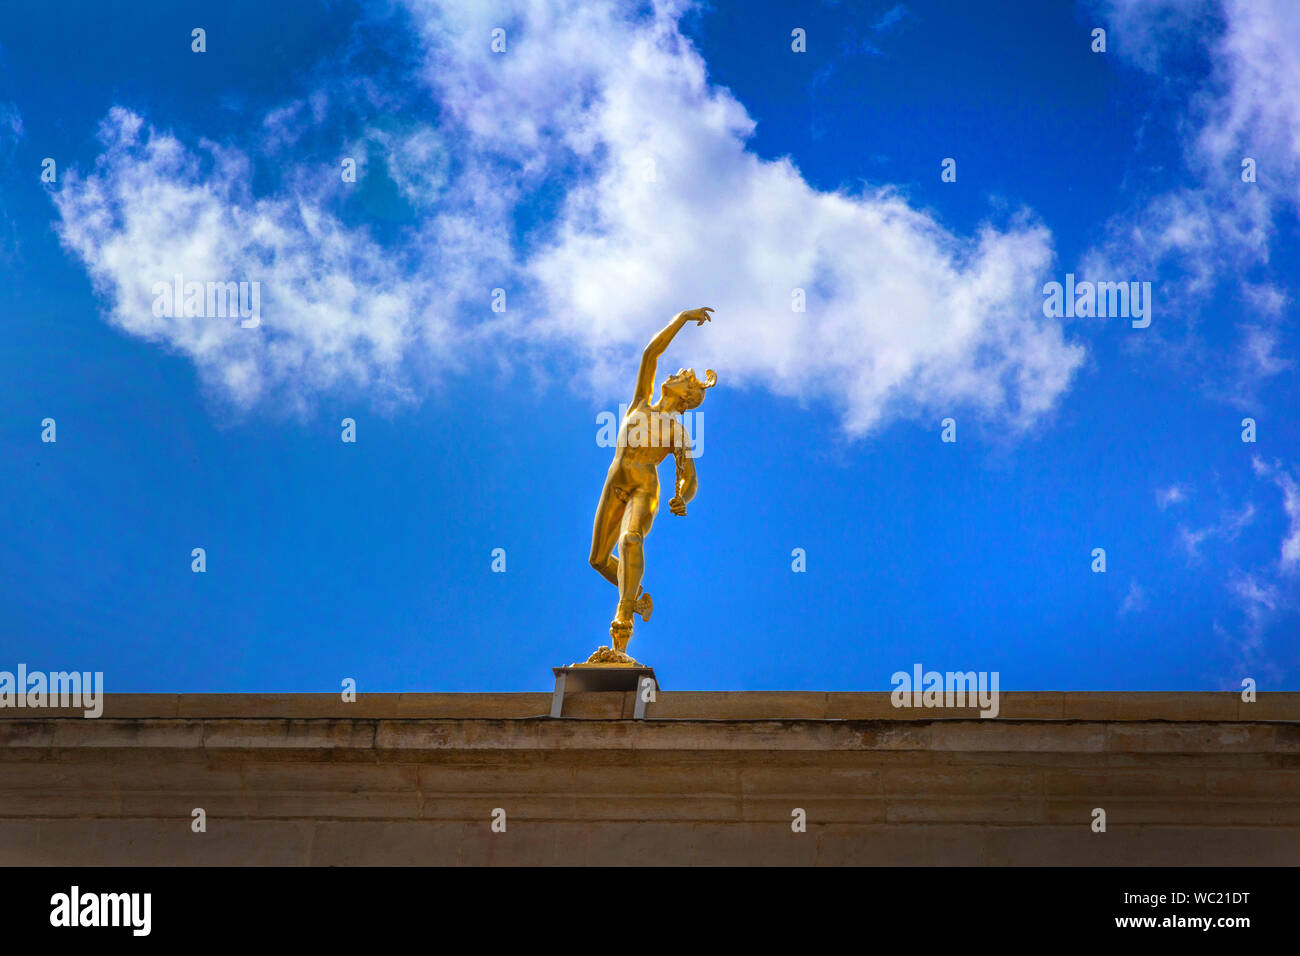 Statue sur le toit, rhe dieu romain Mercure, Stamford, UK Banque D'Images